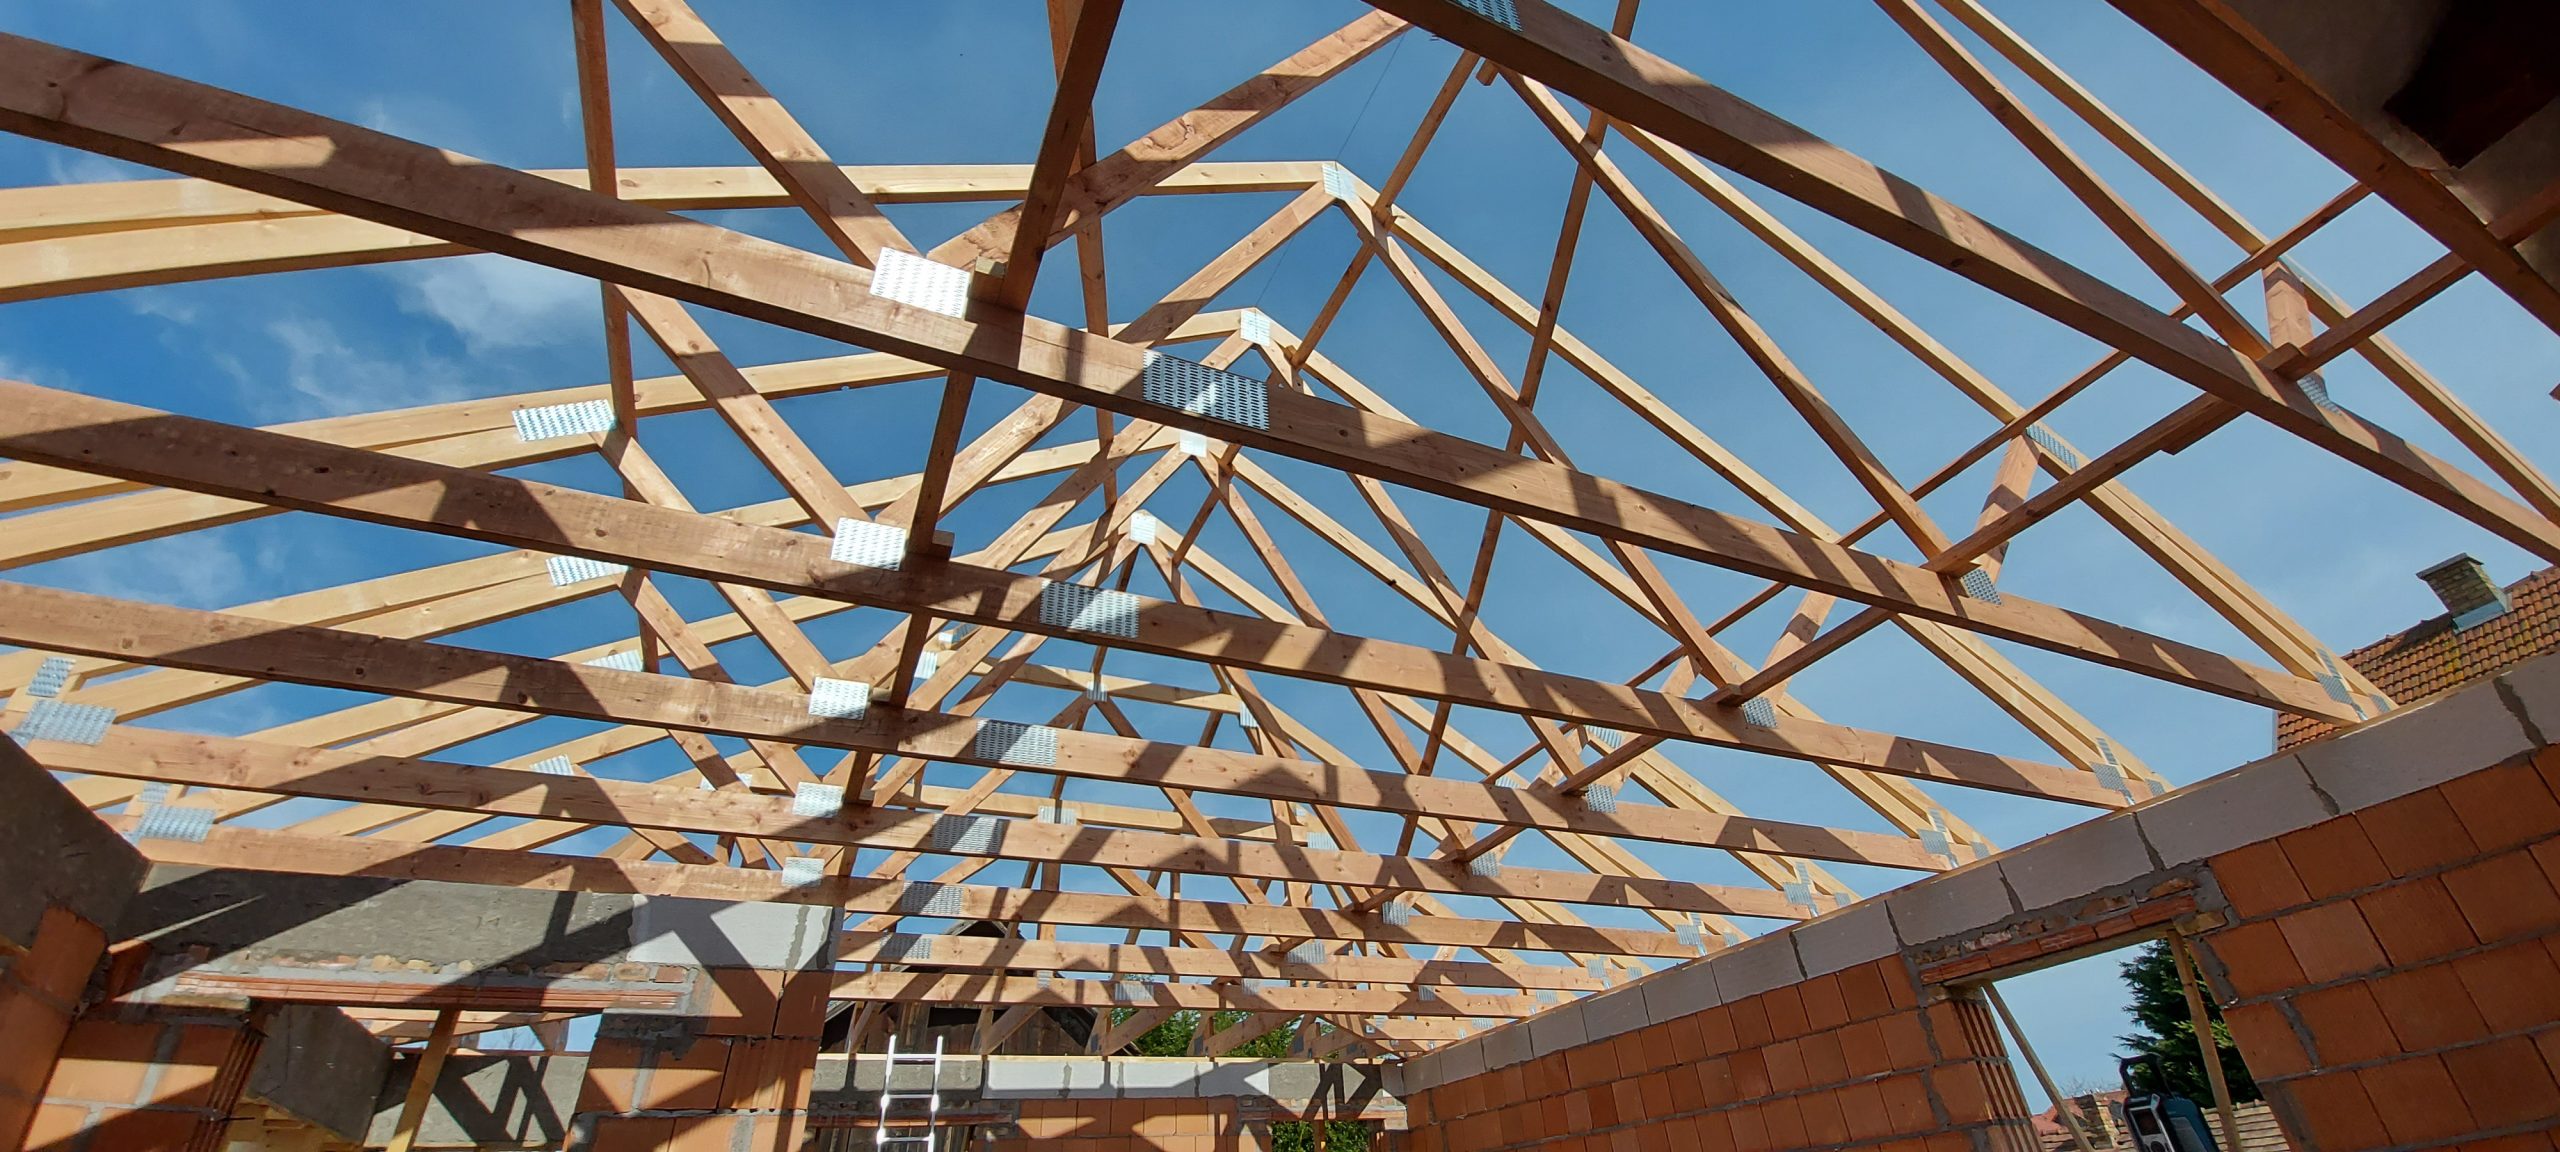 Szeglemezes tetőszerkezetünkkel növeltük otthona tetőjének szigetelési képességét és energiahatékonyságát.